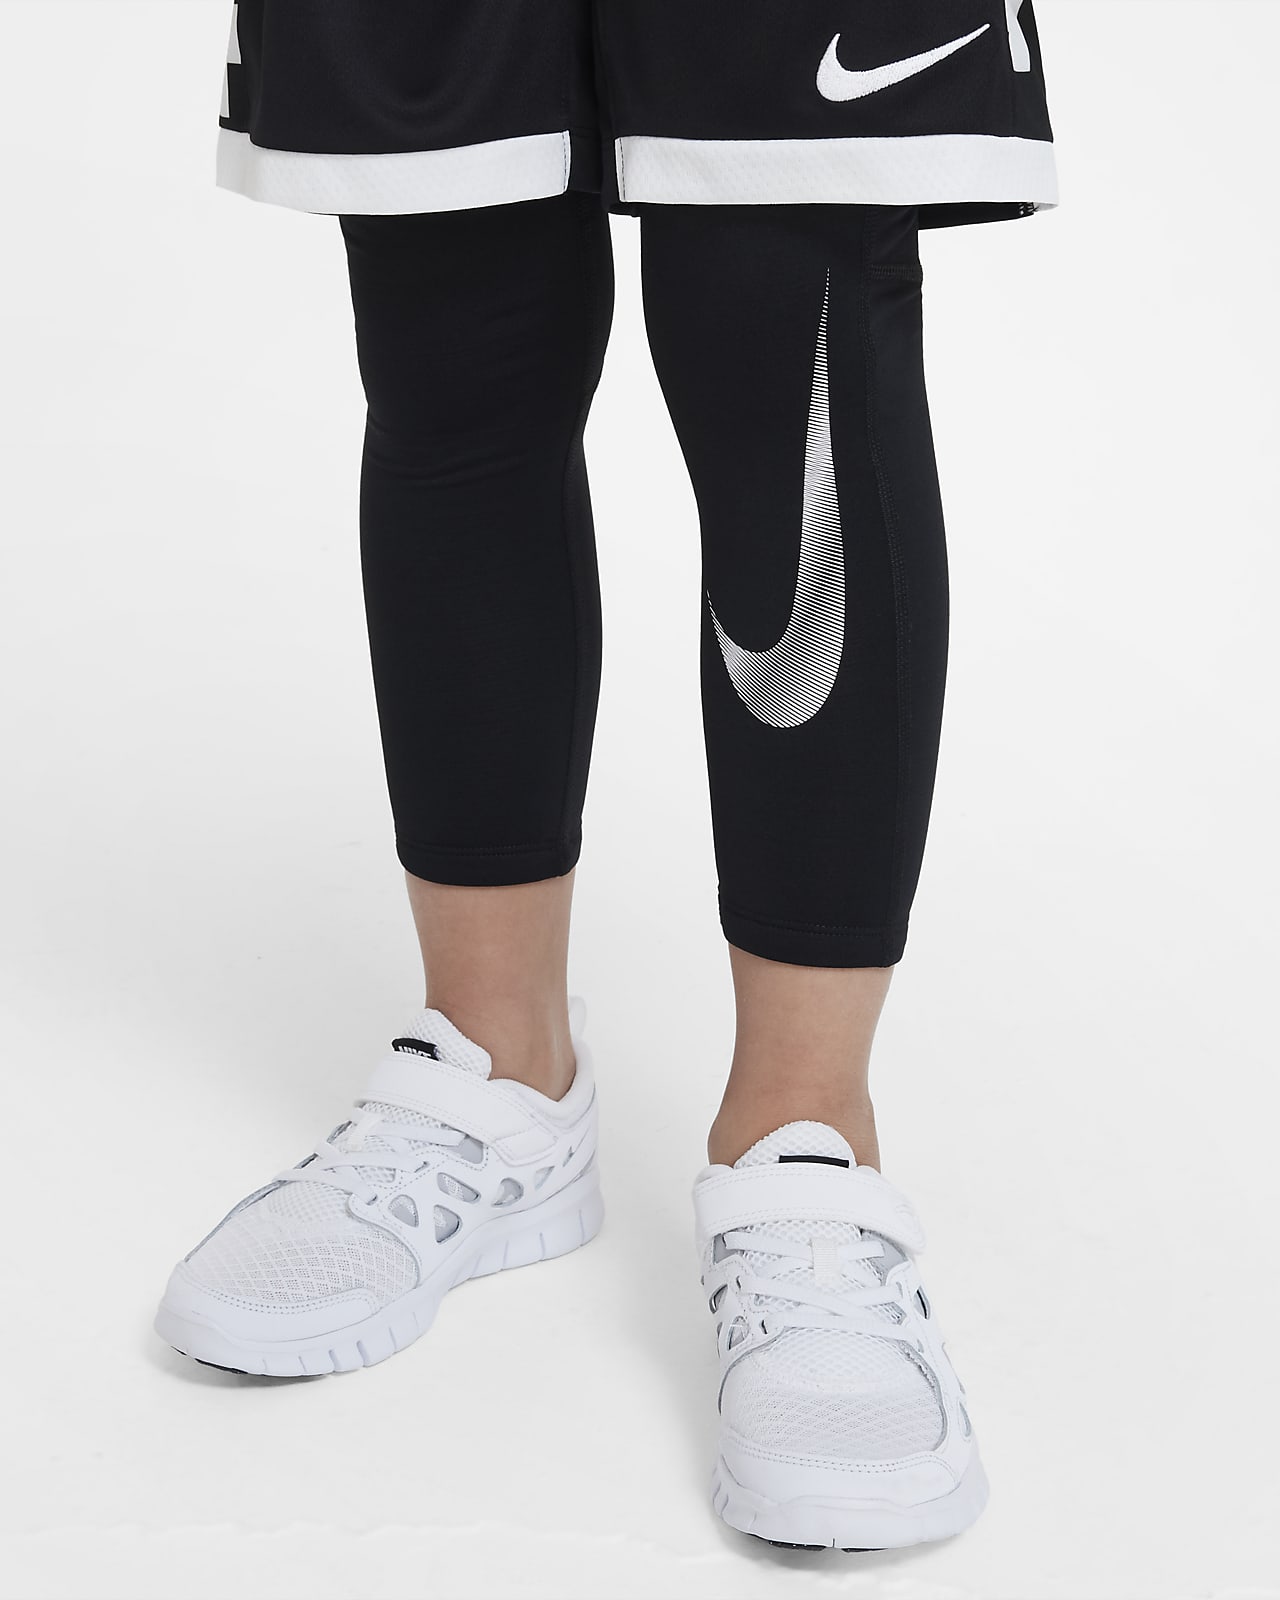 Legging 3/4 - Nike – Entrepôt L'enfant Unique